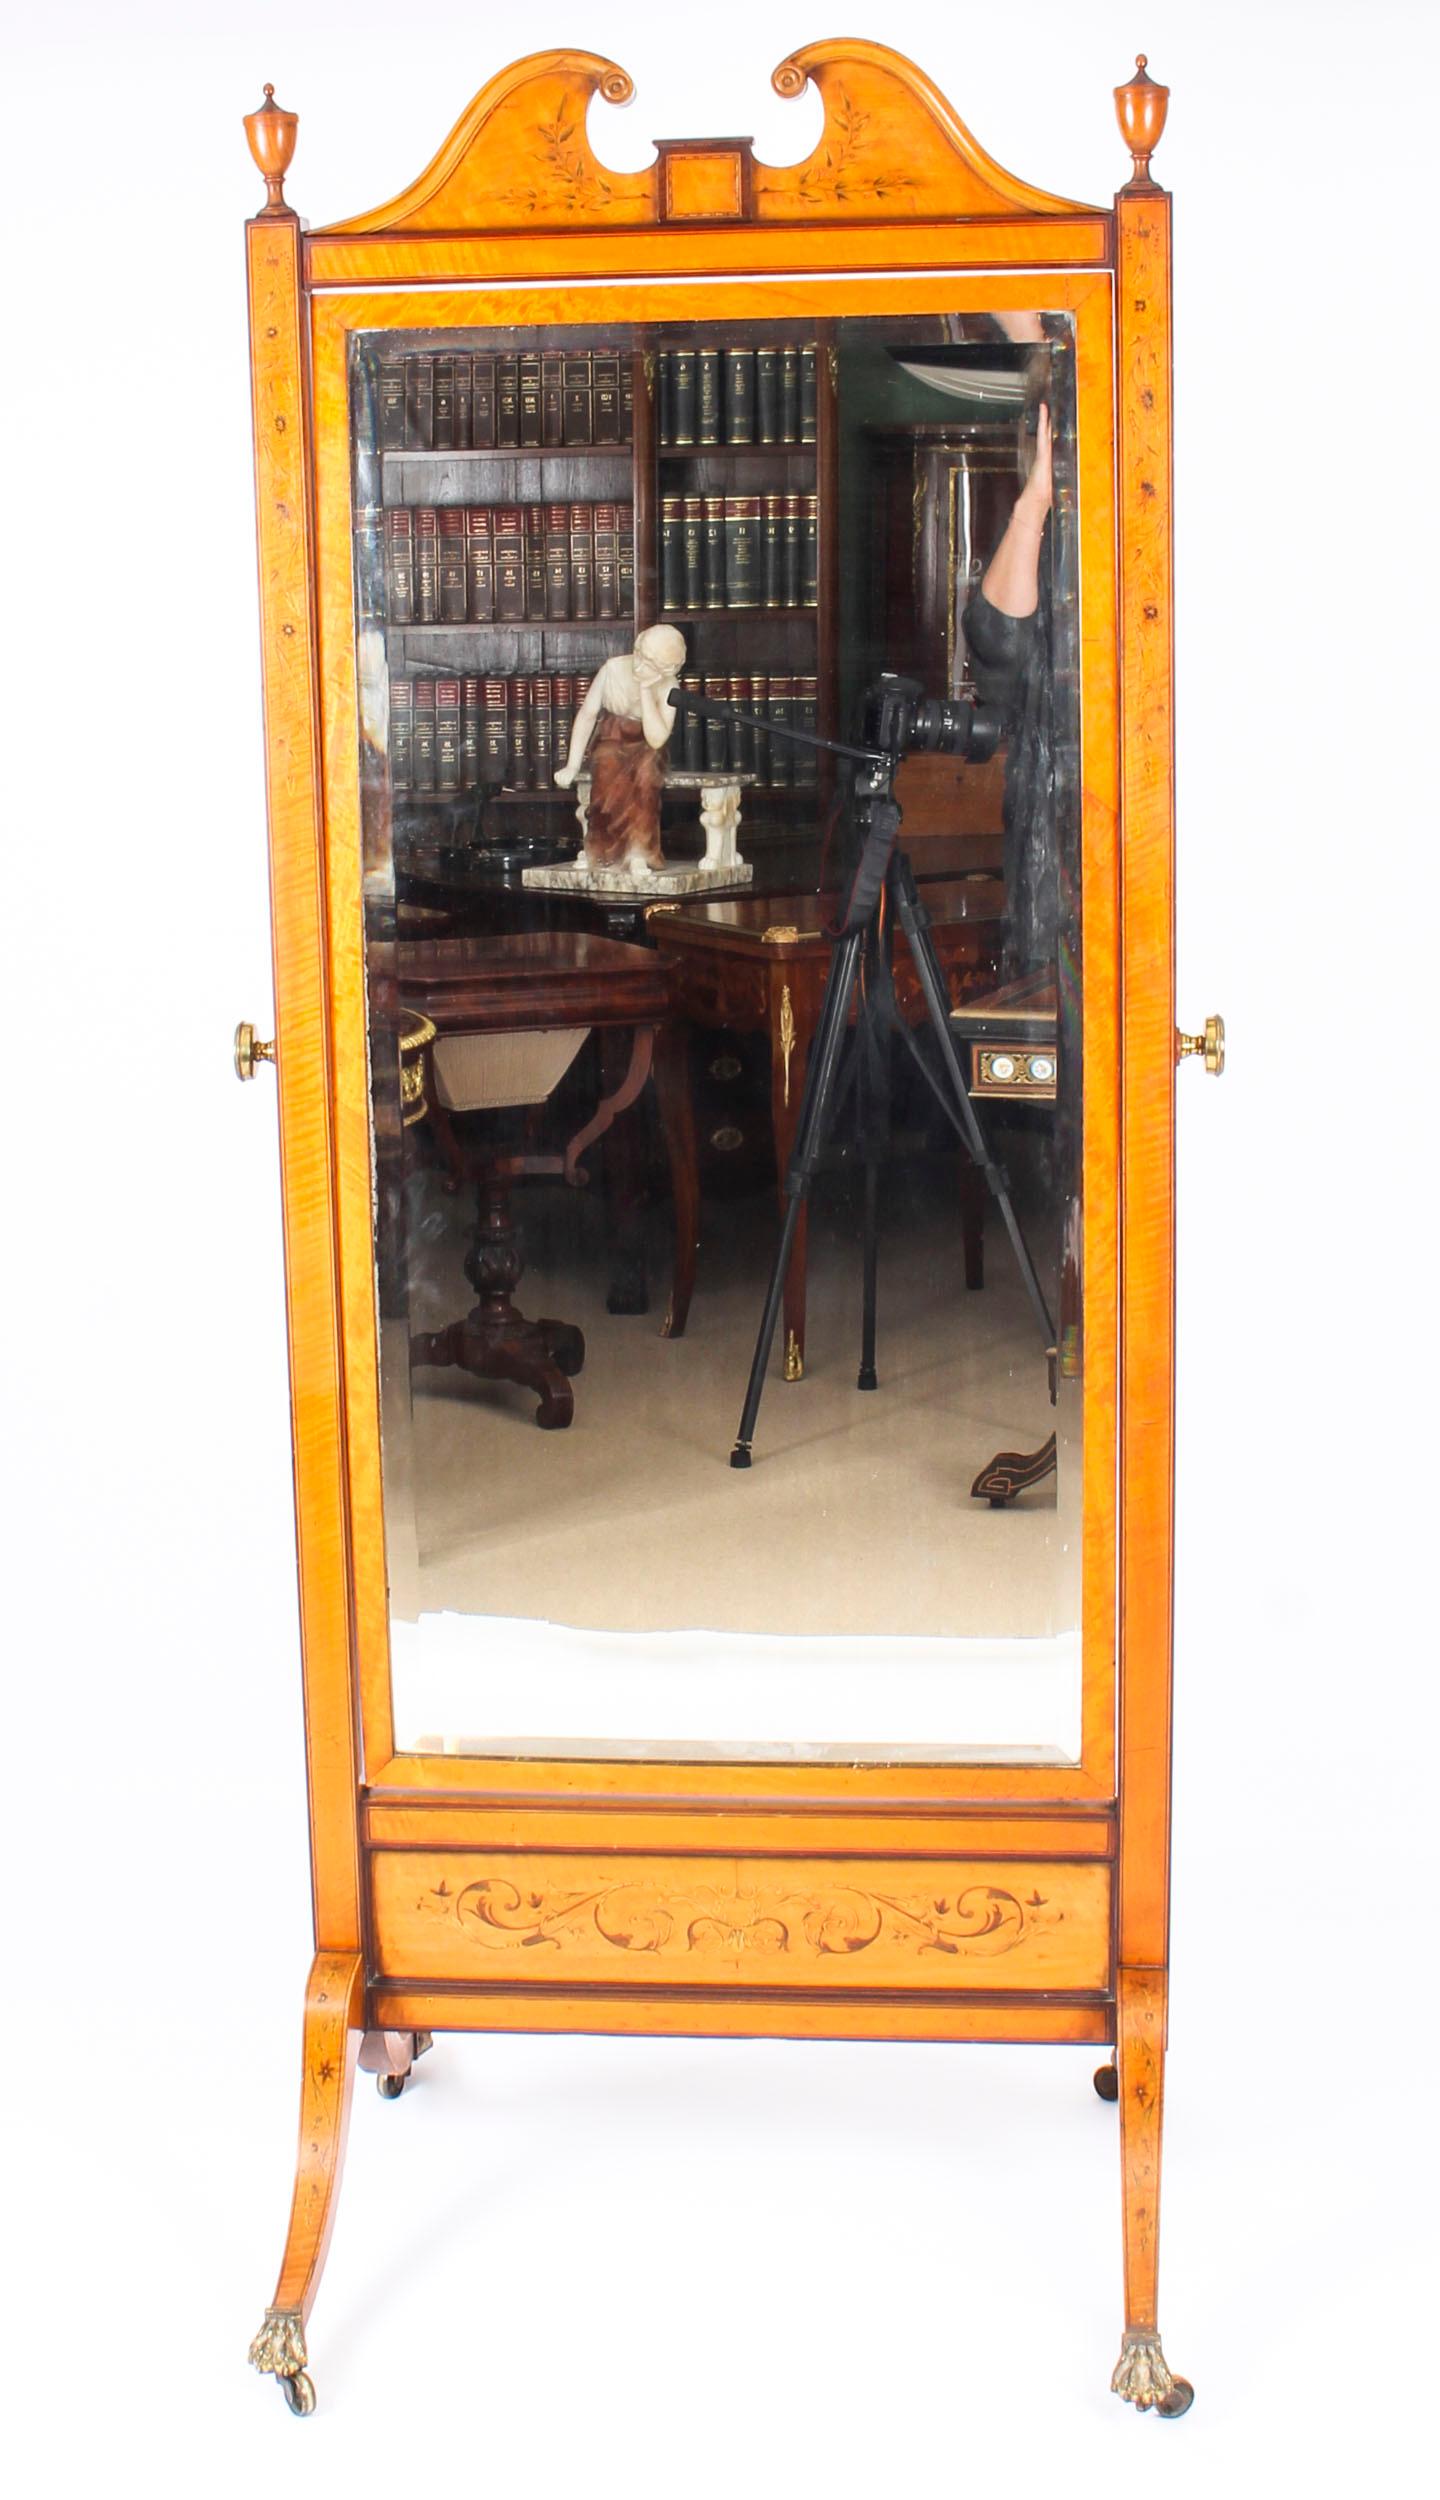 Superbe miroir de coiffeuse cheval de l'époque édouardienne, en bois satiné et incrusté, datant d'environ 1900.

La plaque de miroir centrale rectangulaire est façonnée avec un bord biseauté. Il présente un fronton en col de cygne flanqué de